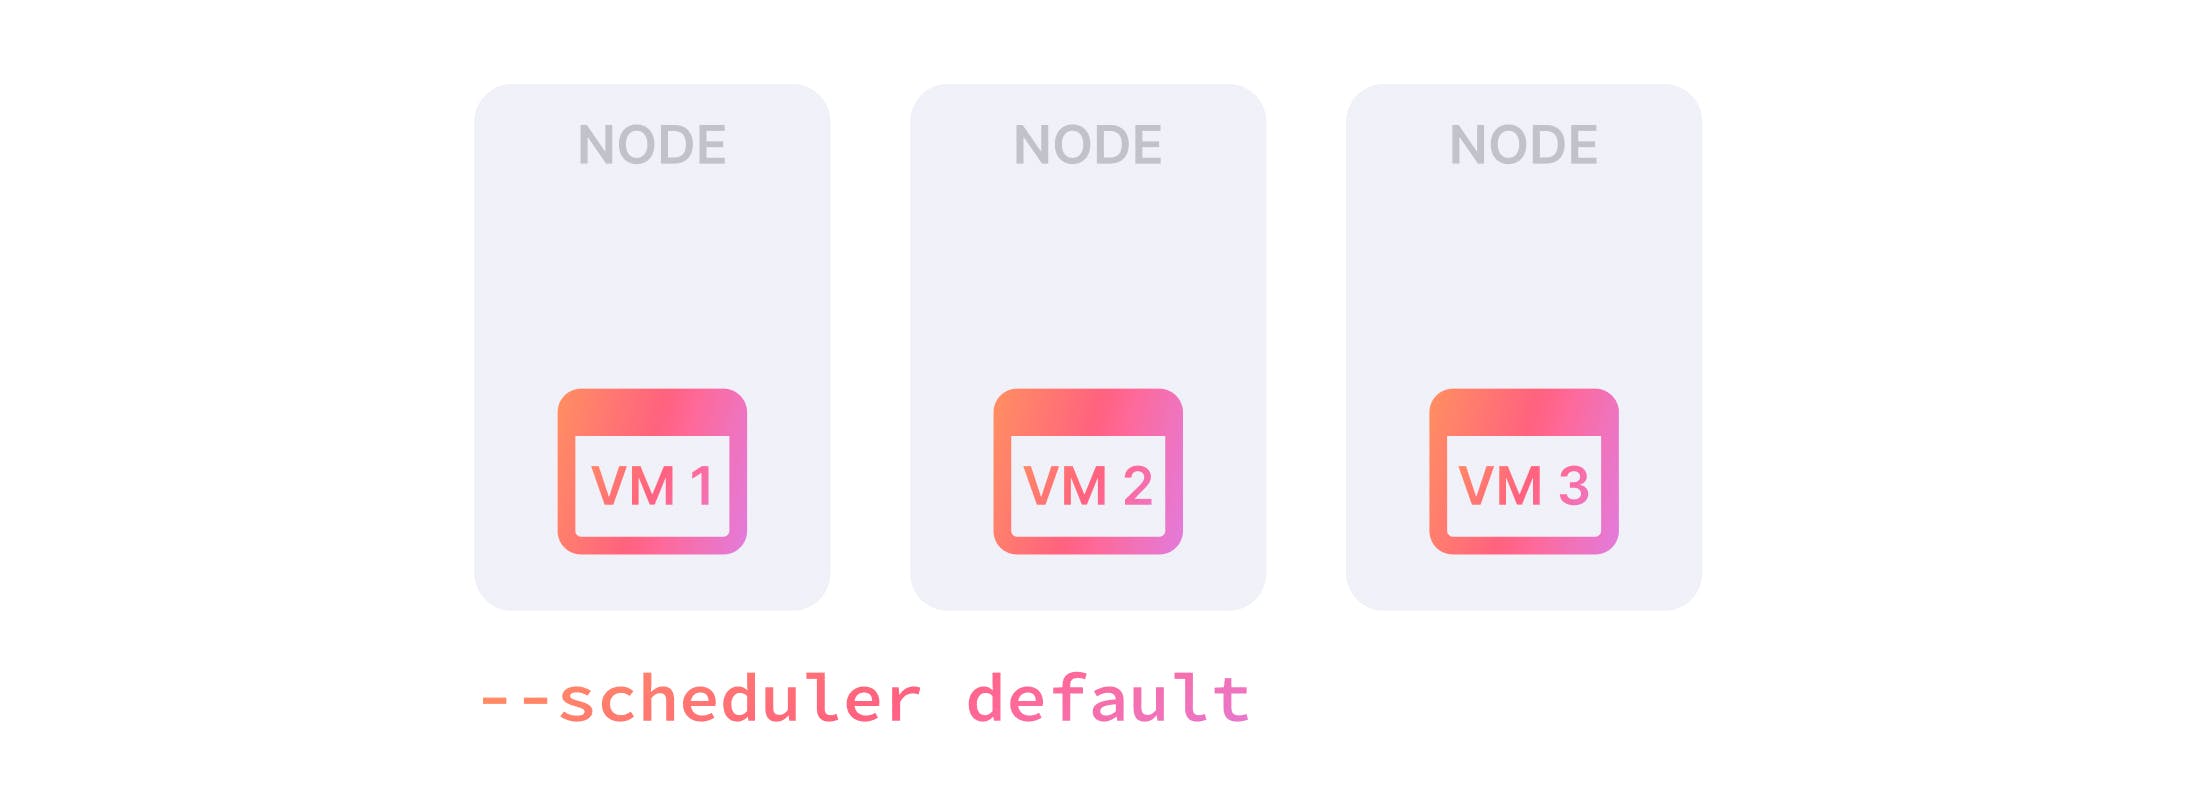 VM scheduler default